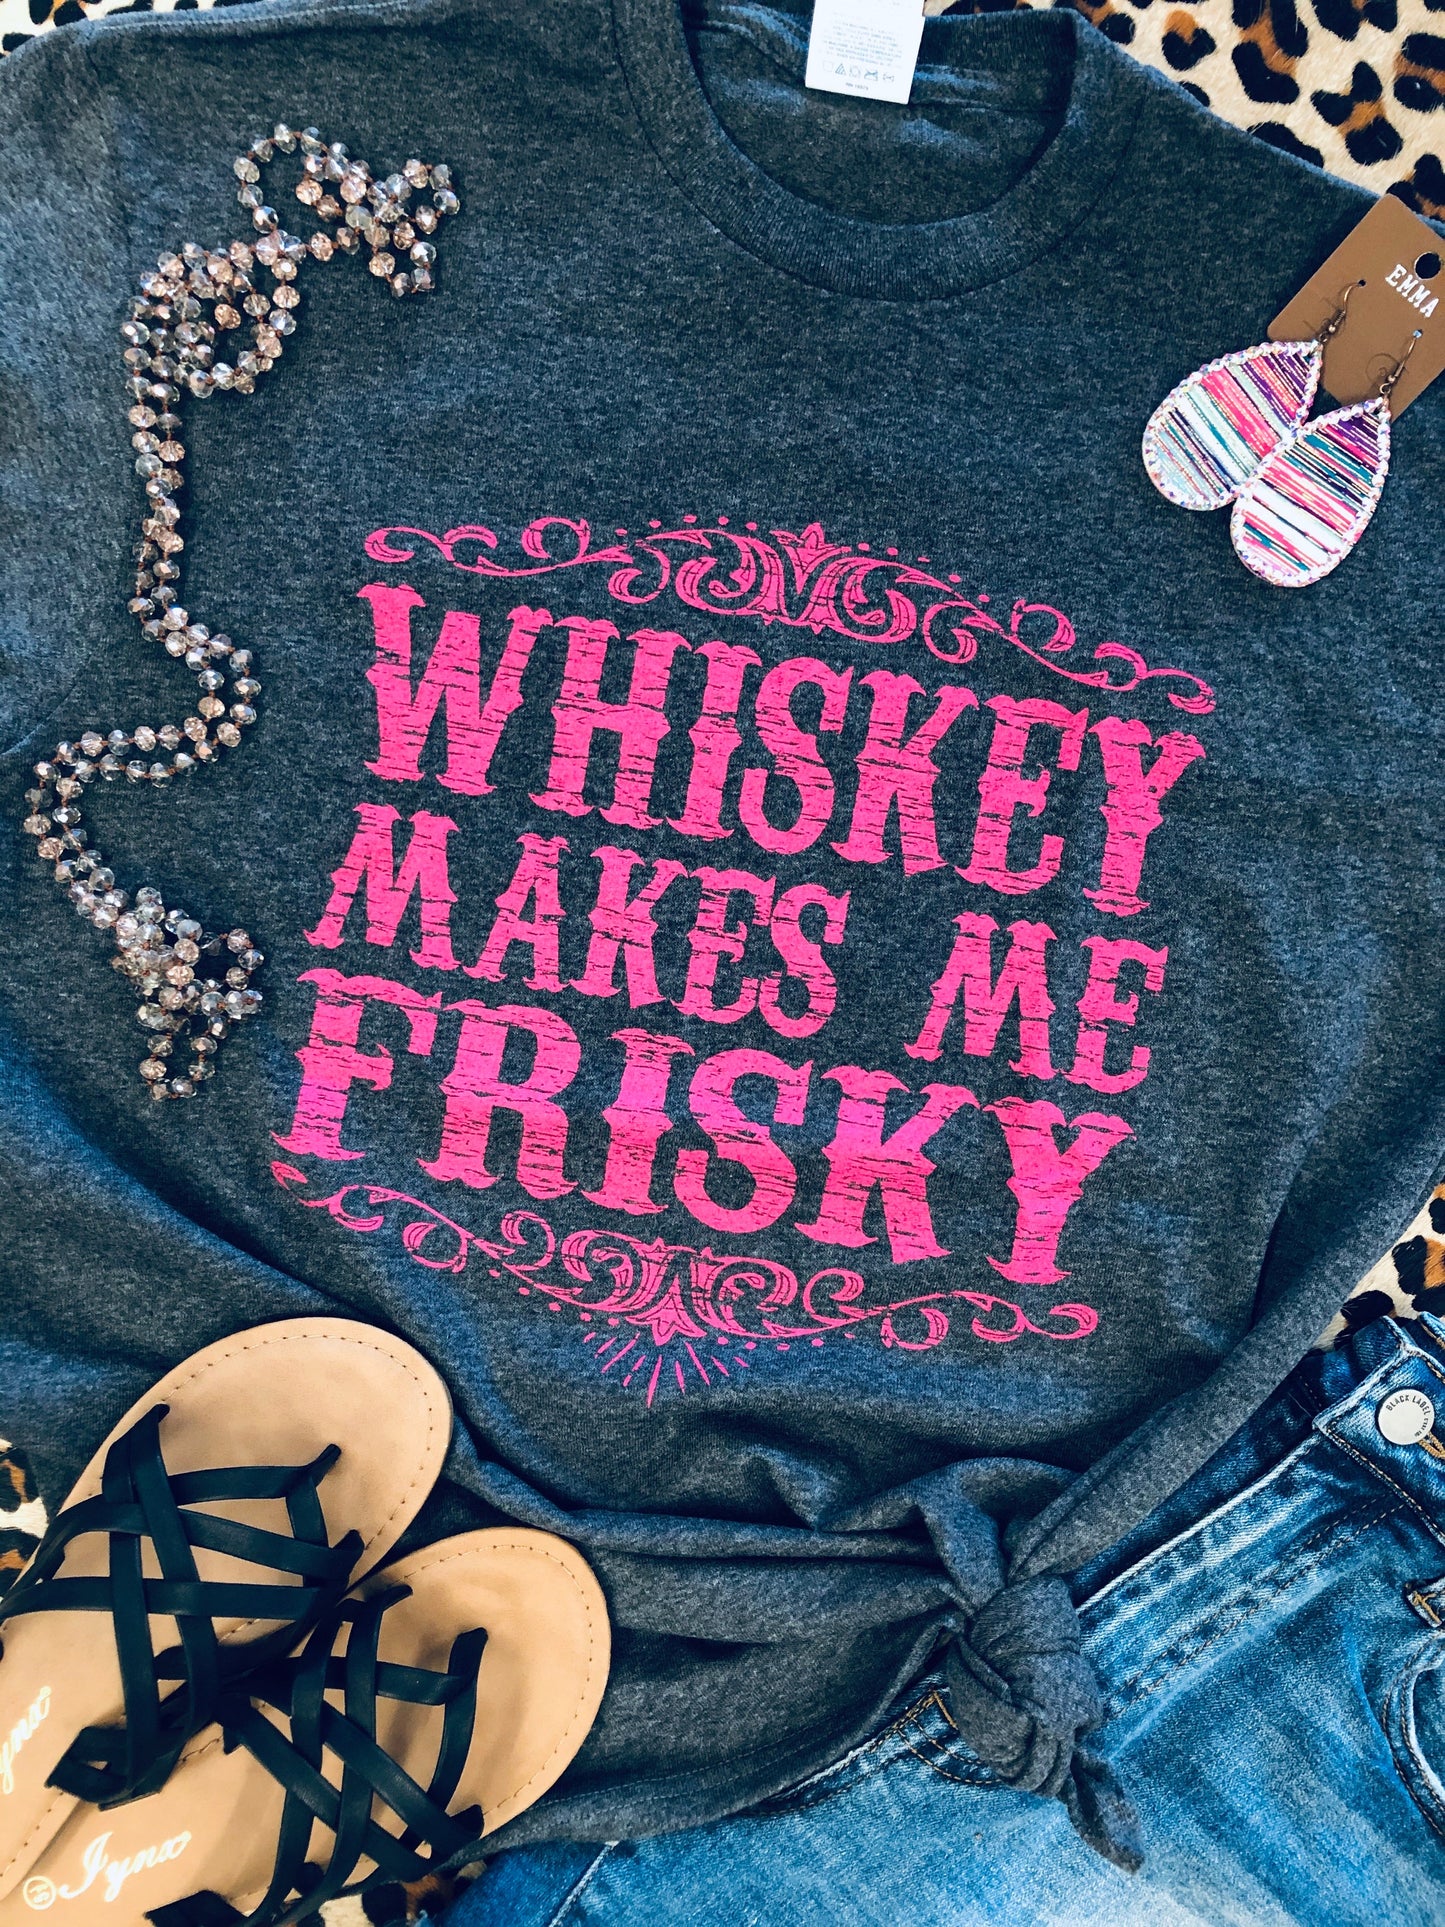 Whiskey Makes Me Friskey Tee